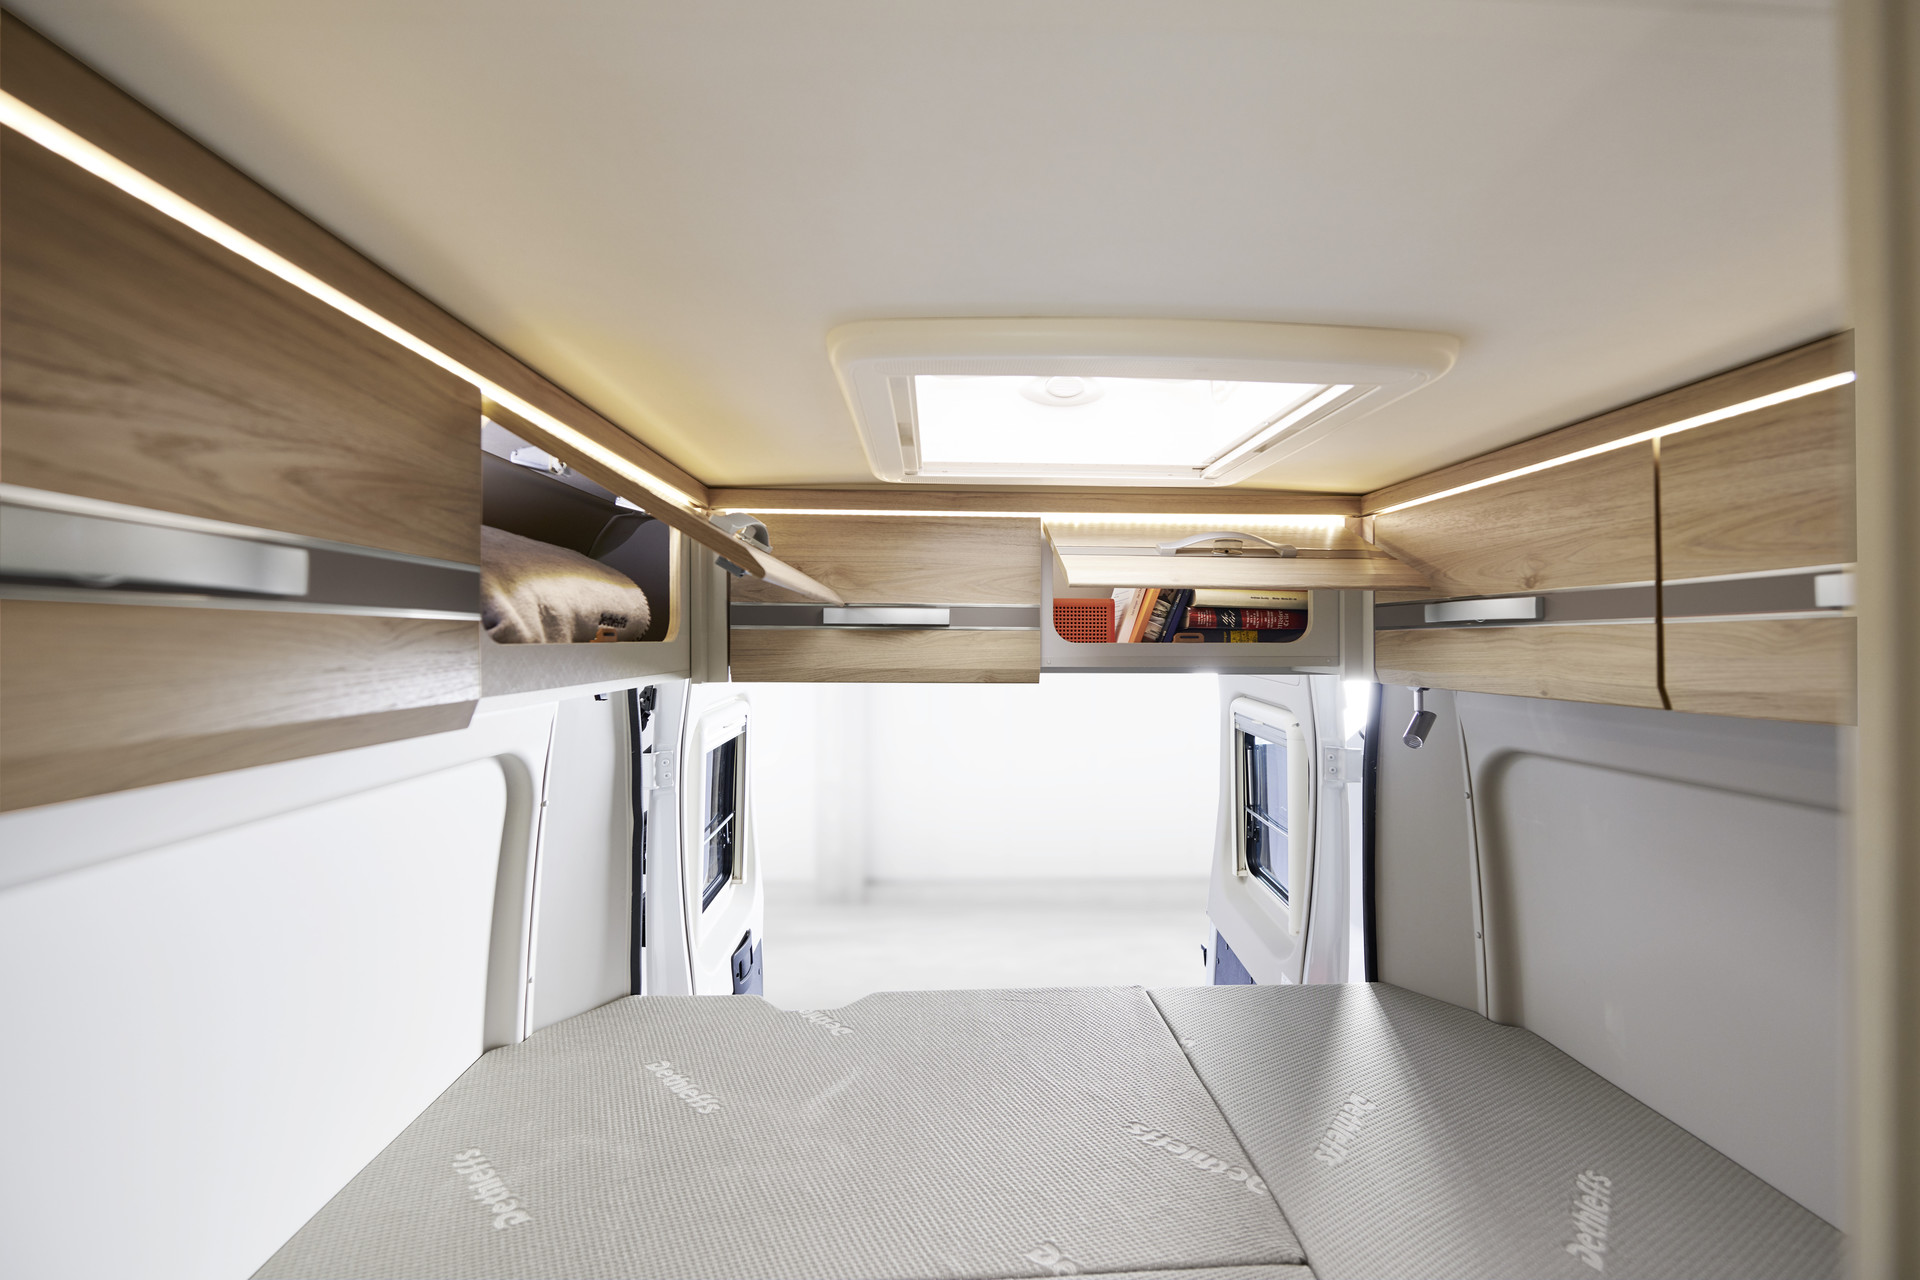 Os armários suspensos de série acima da porta traseira fornecem espaço de arrumação adicional e têm iluminação indireta.